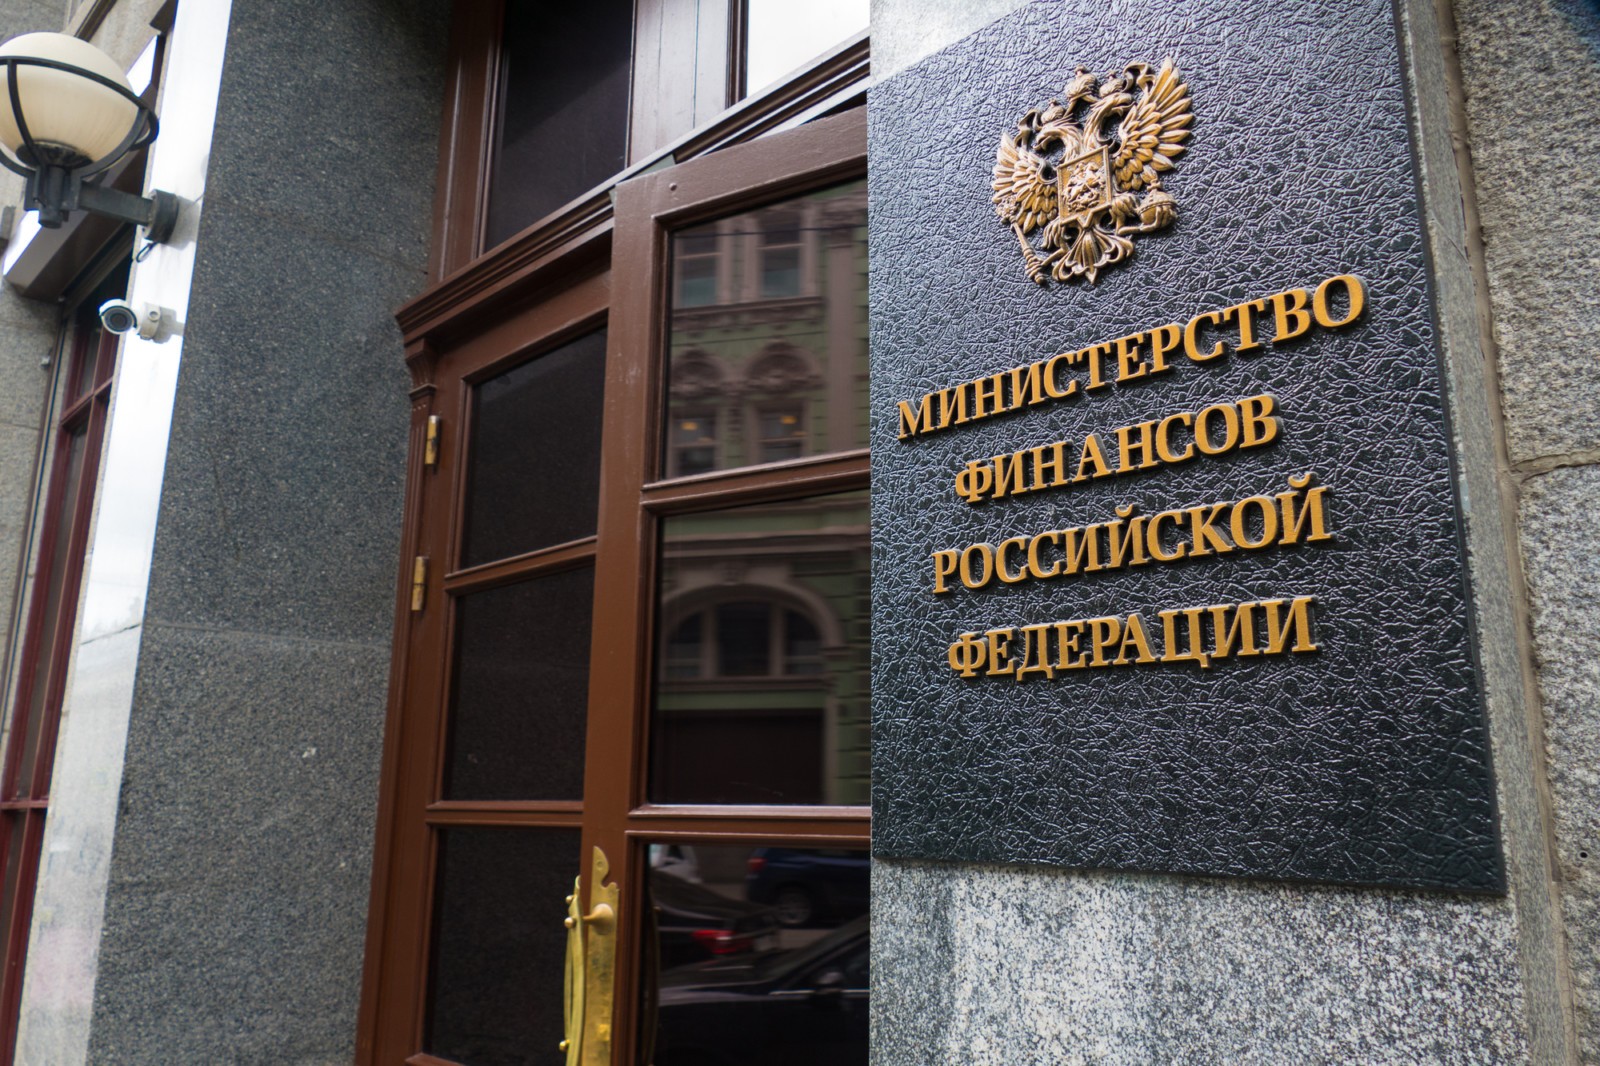 Минфин: В РФ будут облигации дружественных стран